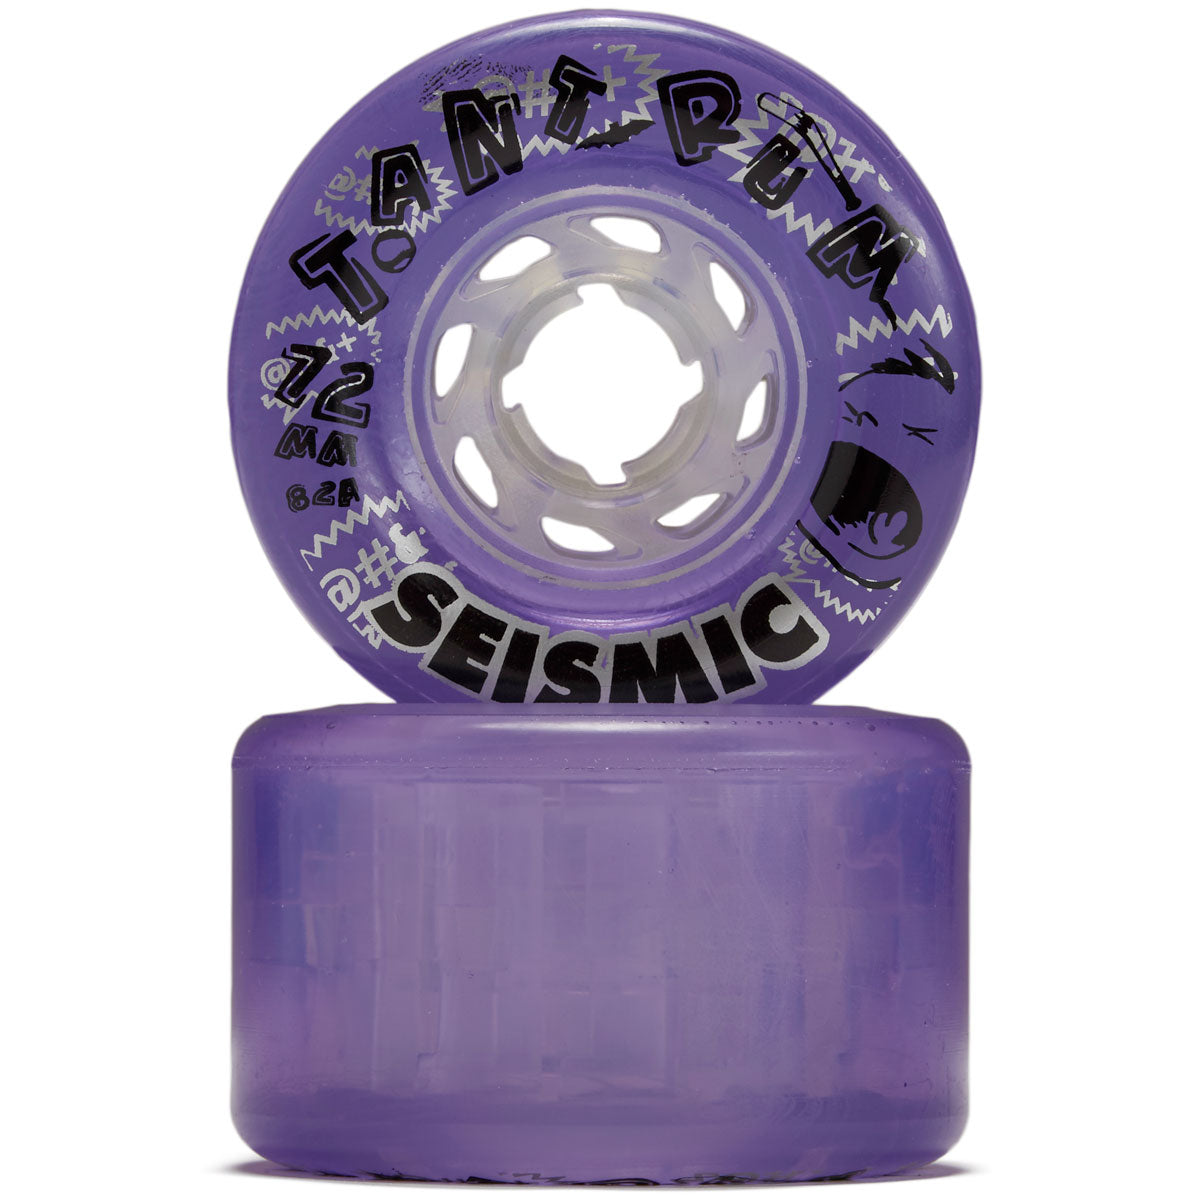 Seismic Tantrum 82a Longboard Wheels - Clear Purple - 72mm image 2